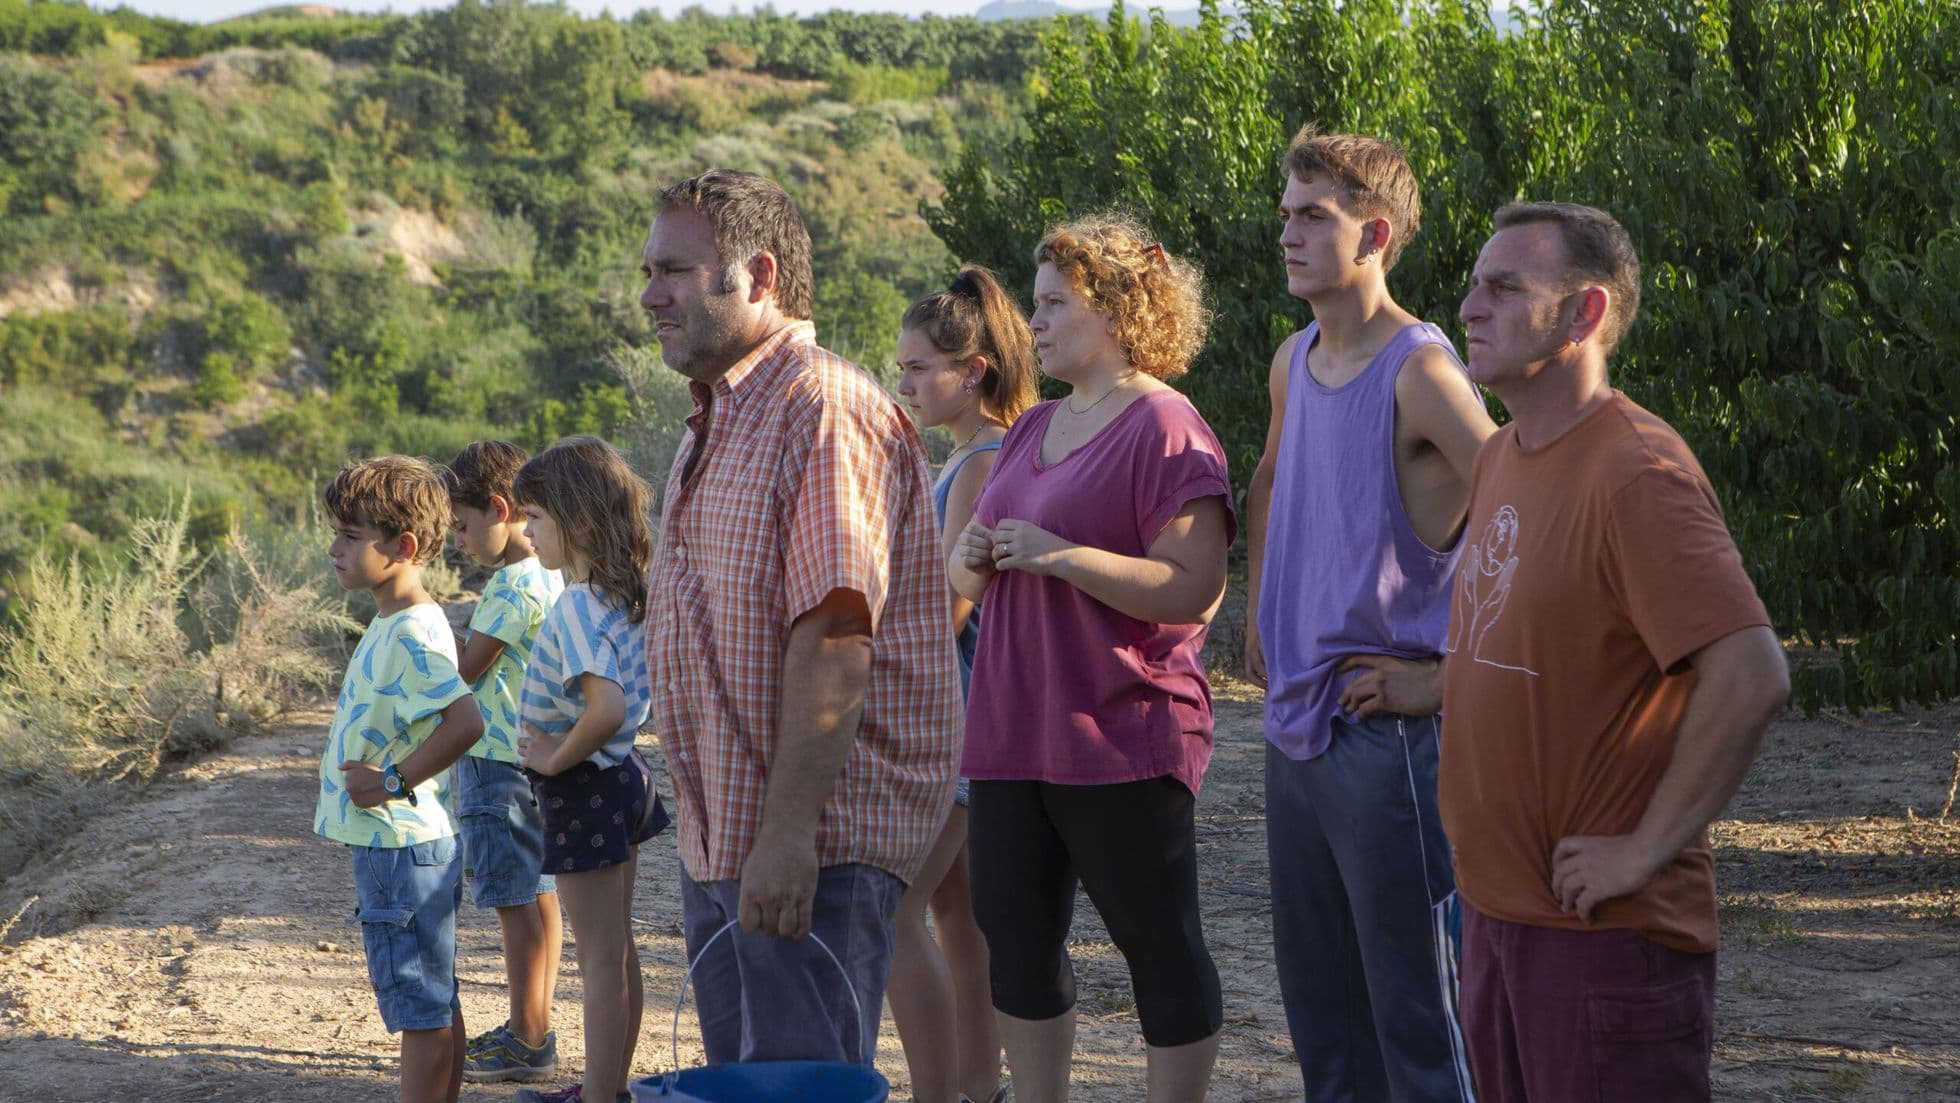 Imagem retangular que mostra uma cena do filme Algarràs. Uma família branca está em pé, todos virados de lado, olhando na direção esquerda da imagem. O fundo tem montanhas e plantações verdes.